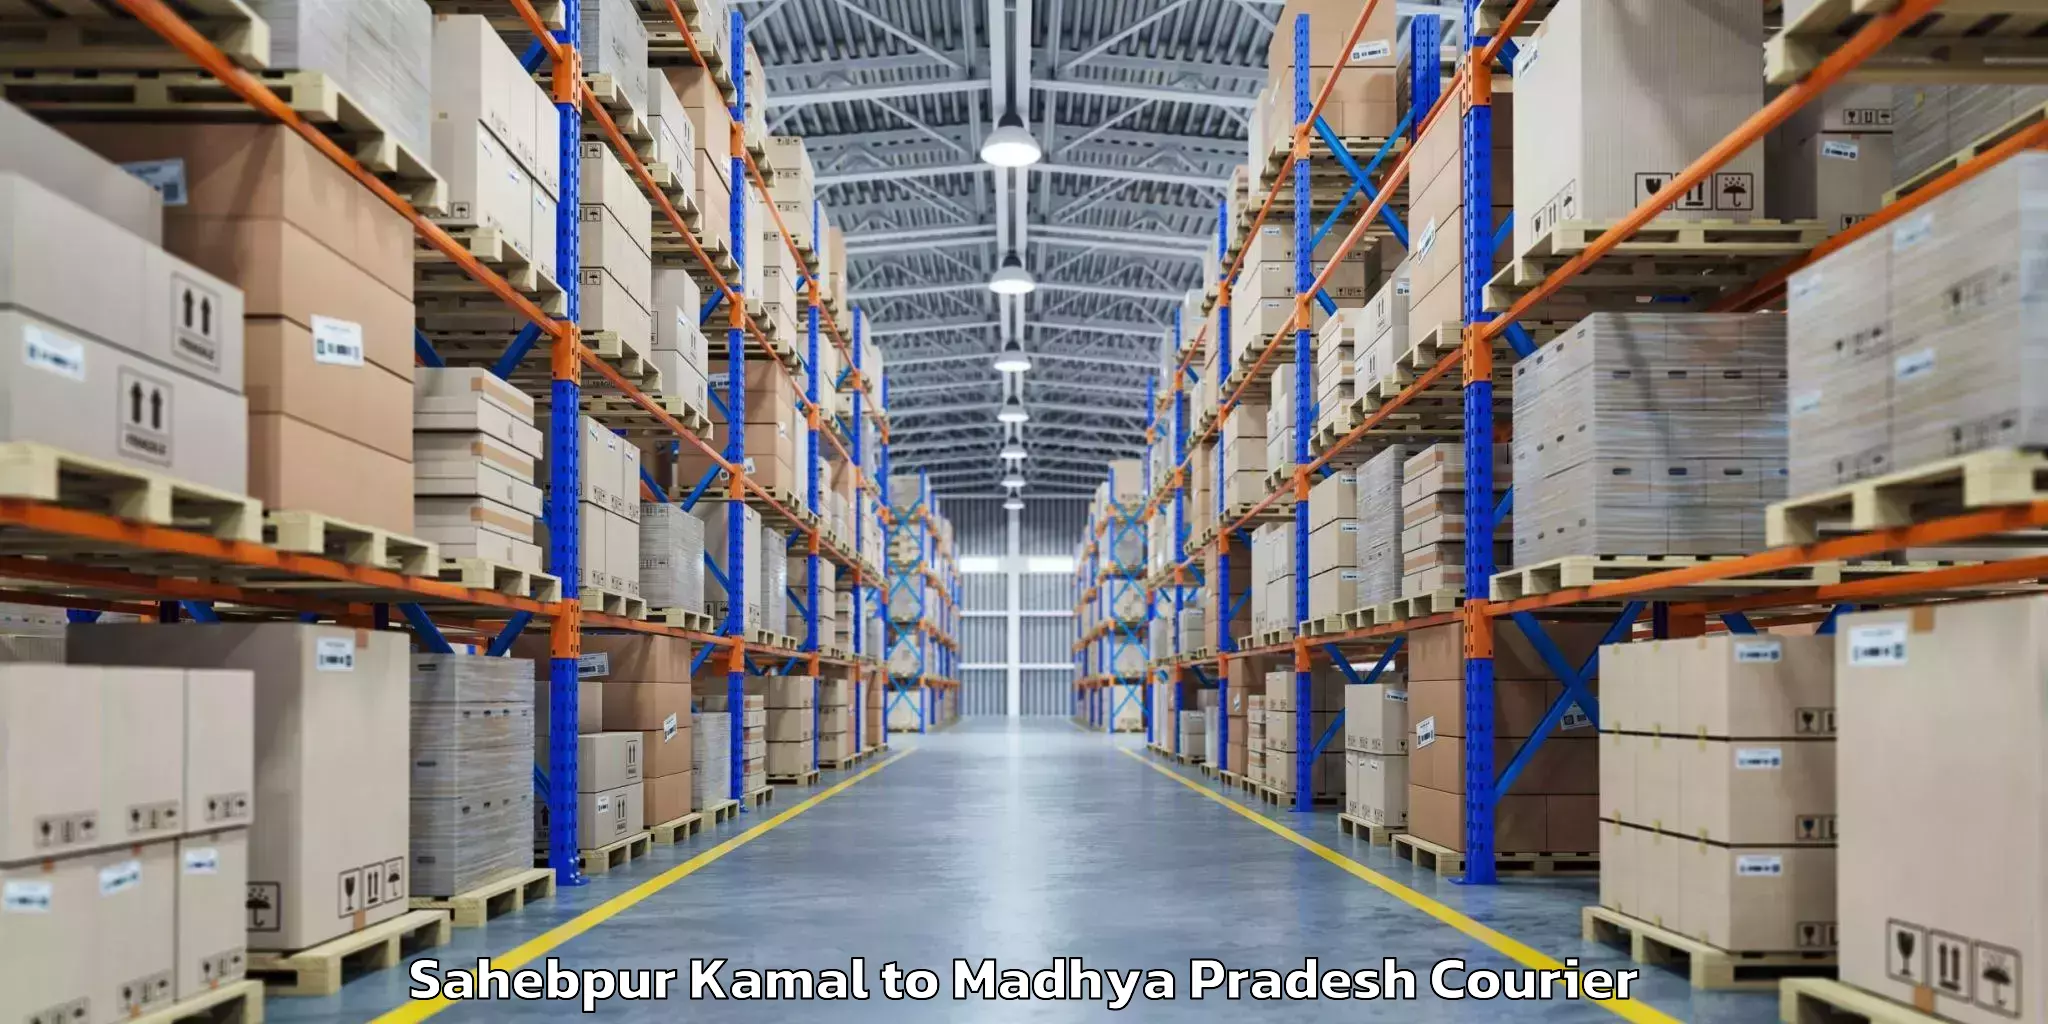 Luggage delivery providers Sahebpur Kamal to Rajendragram